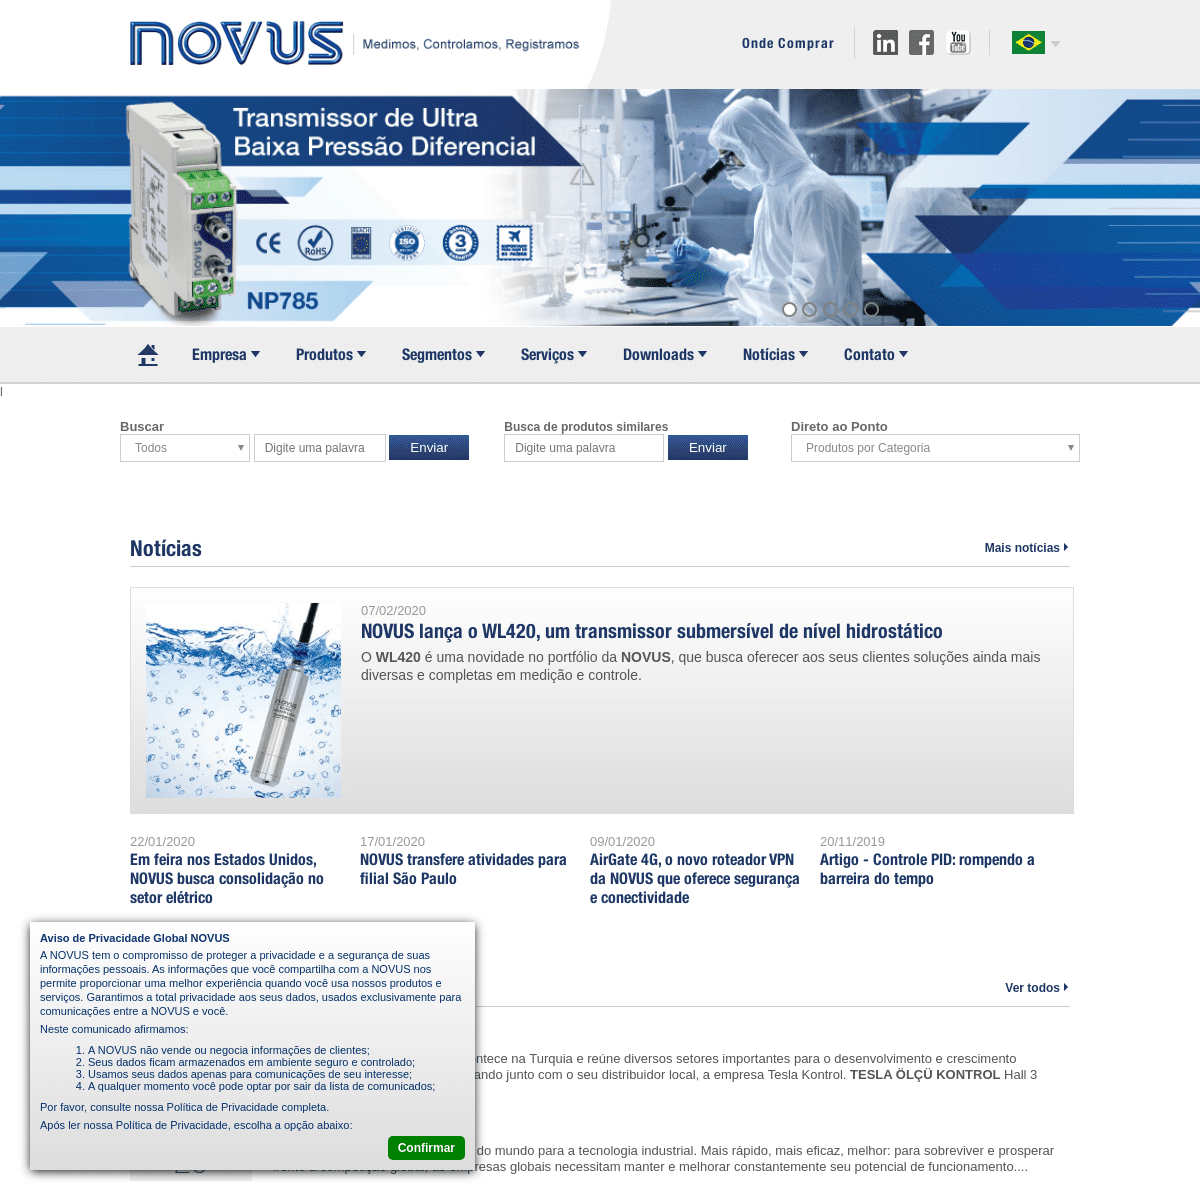 A complete backup of novus.com.br